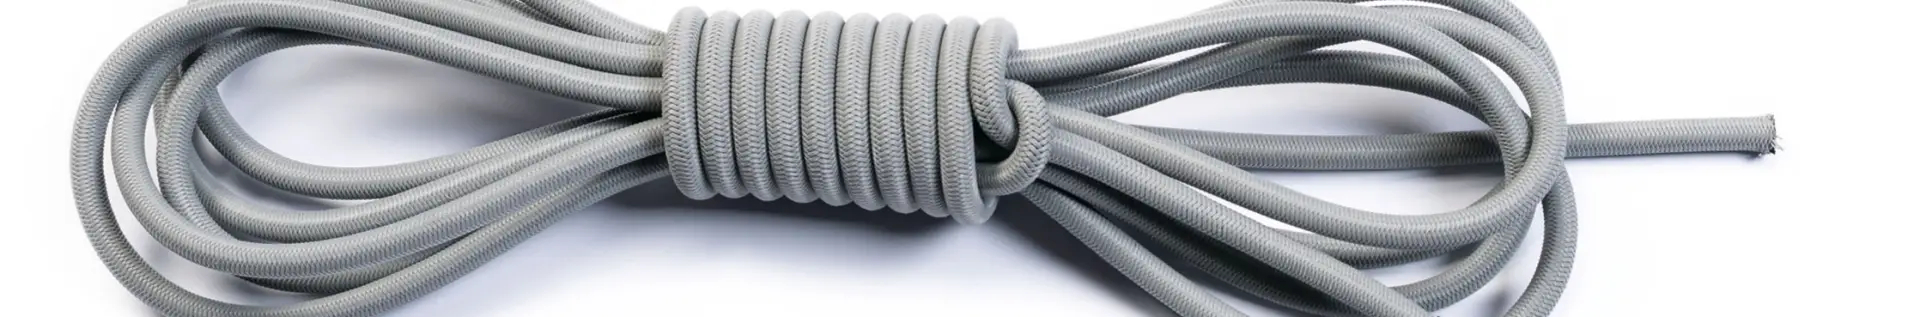 elastic cords